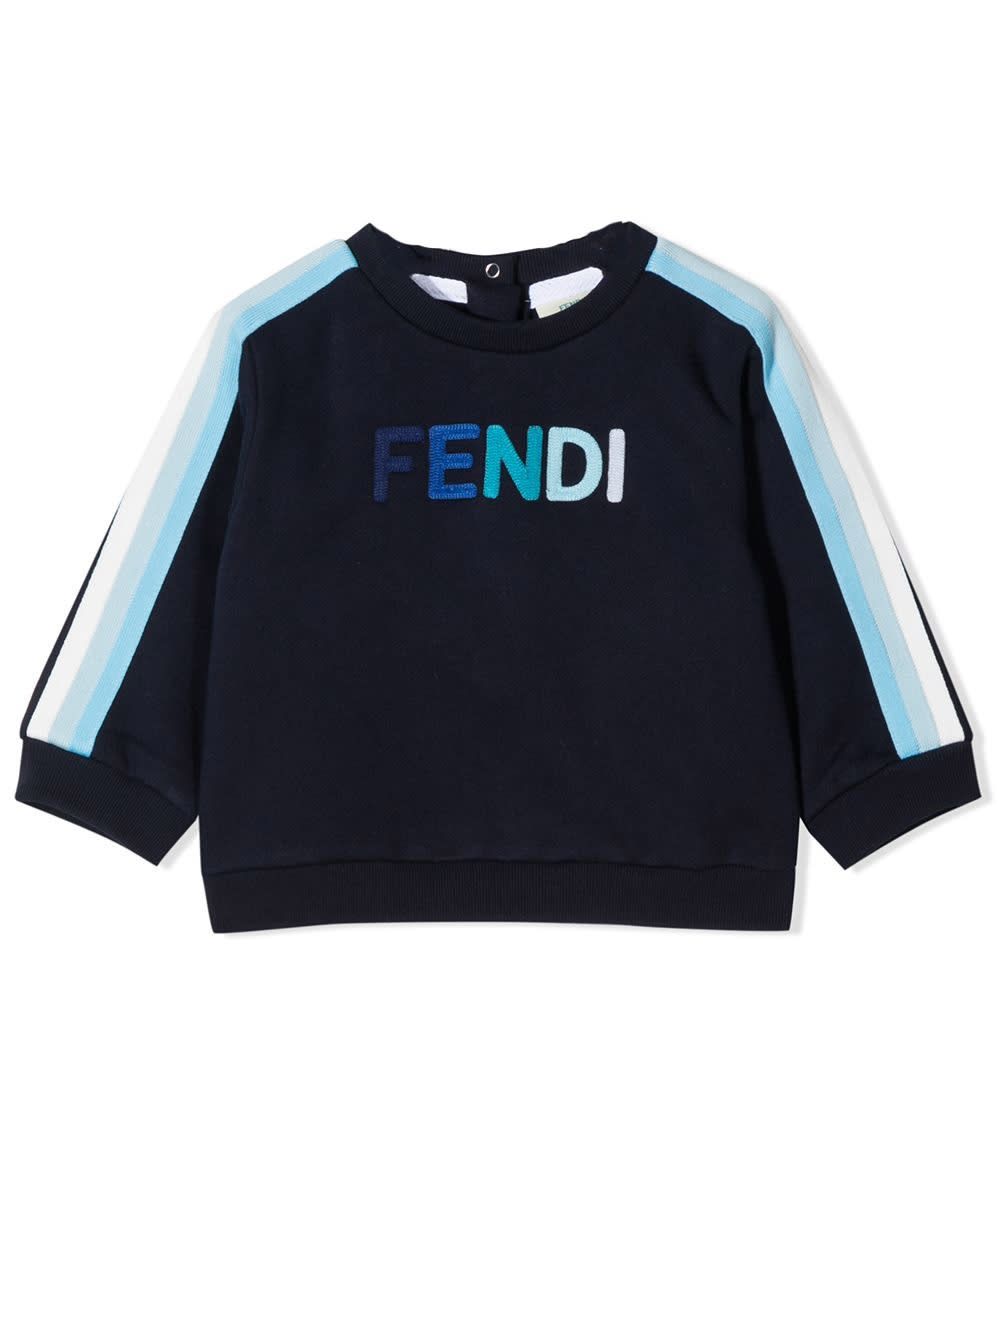 FENDI FENDI KIDS